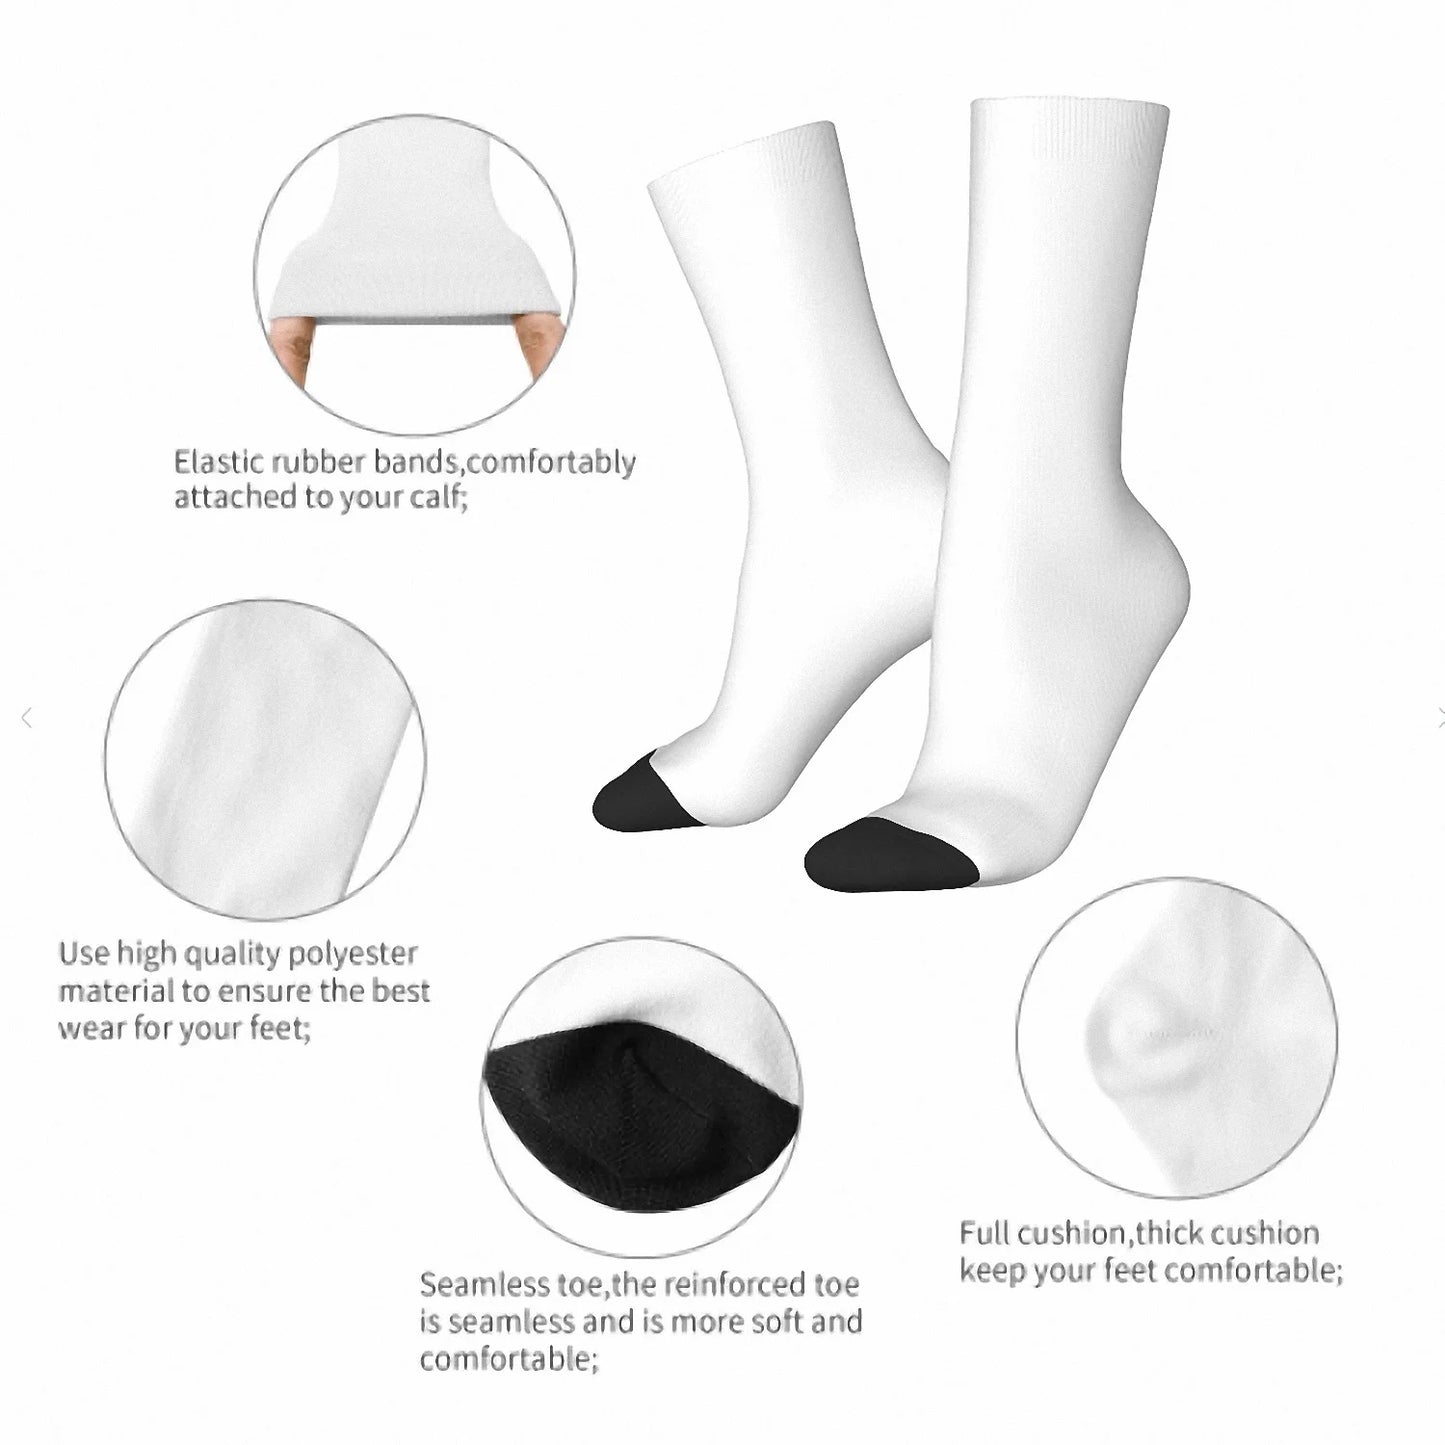 Non. Natural One D20 - Chaussettes à imprimé drôle Dnd chaussettes en bambou chaussettes chauffantes pour hommes